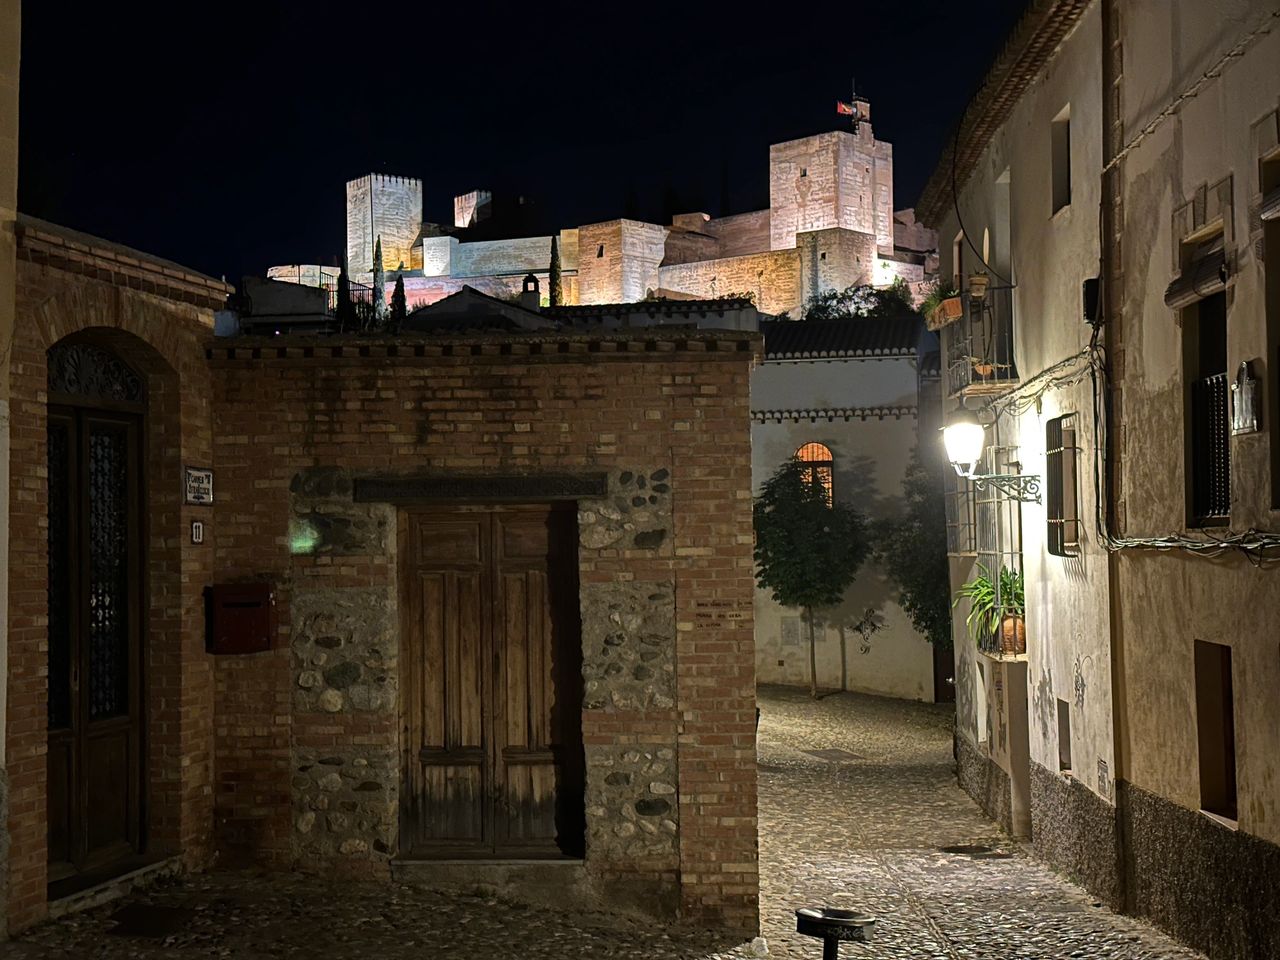 Streets of Granada at night